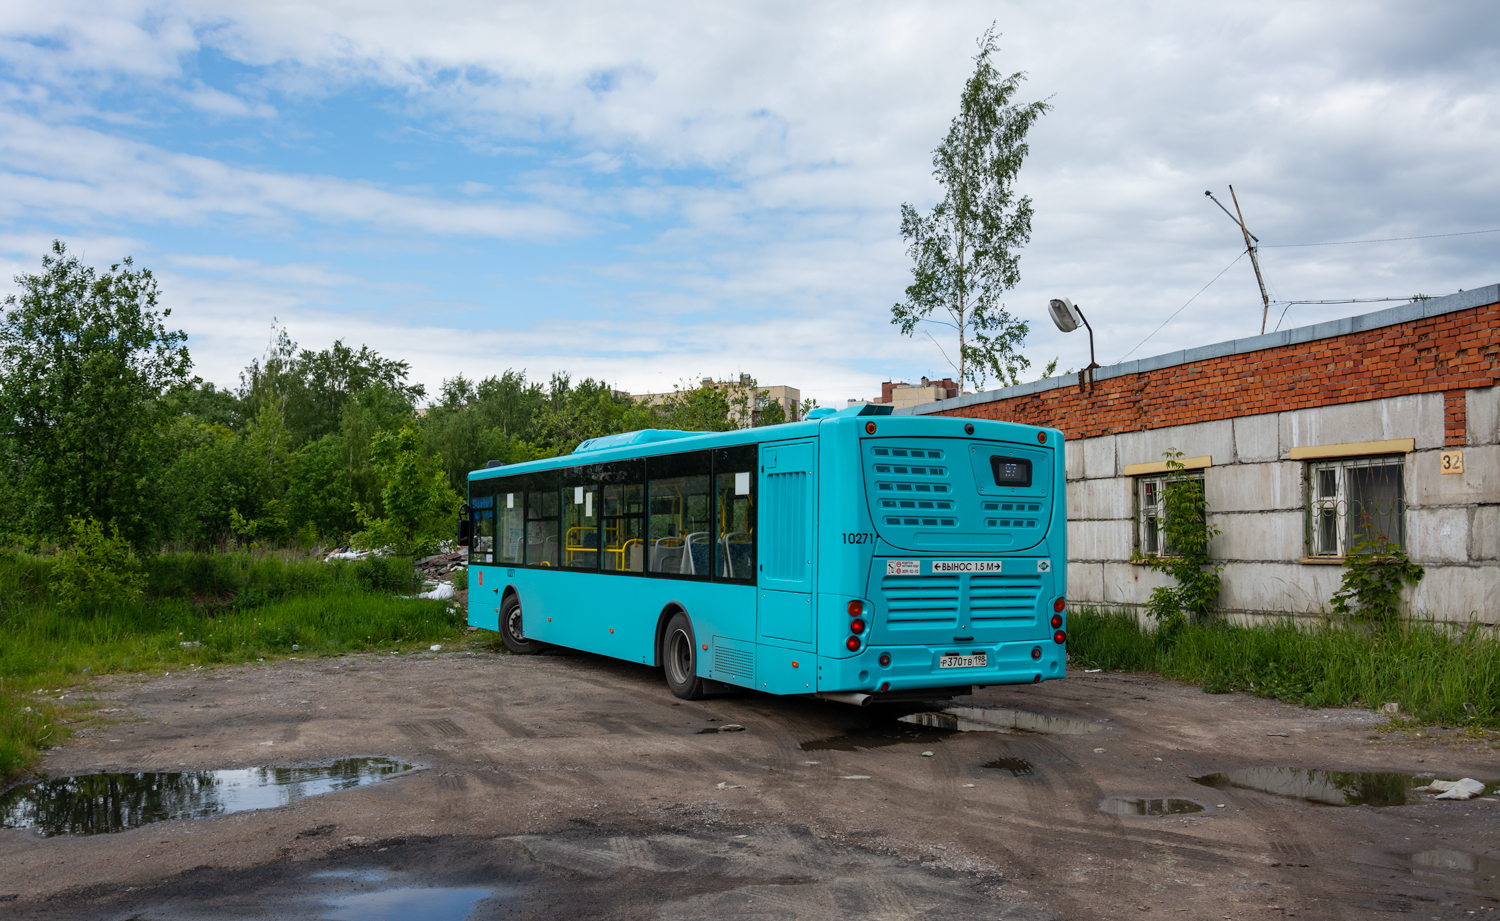 Saint-Pétersbourg, Volgabus-5270.G4 (LNG) # 10271